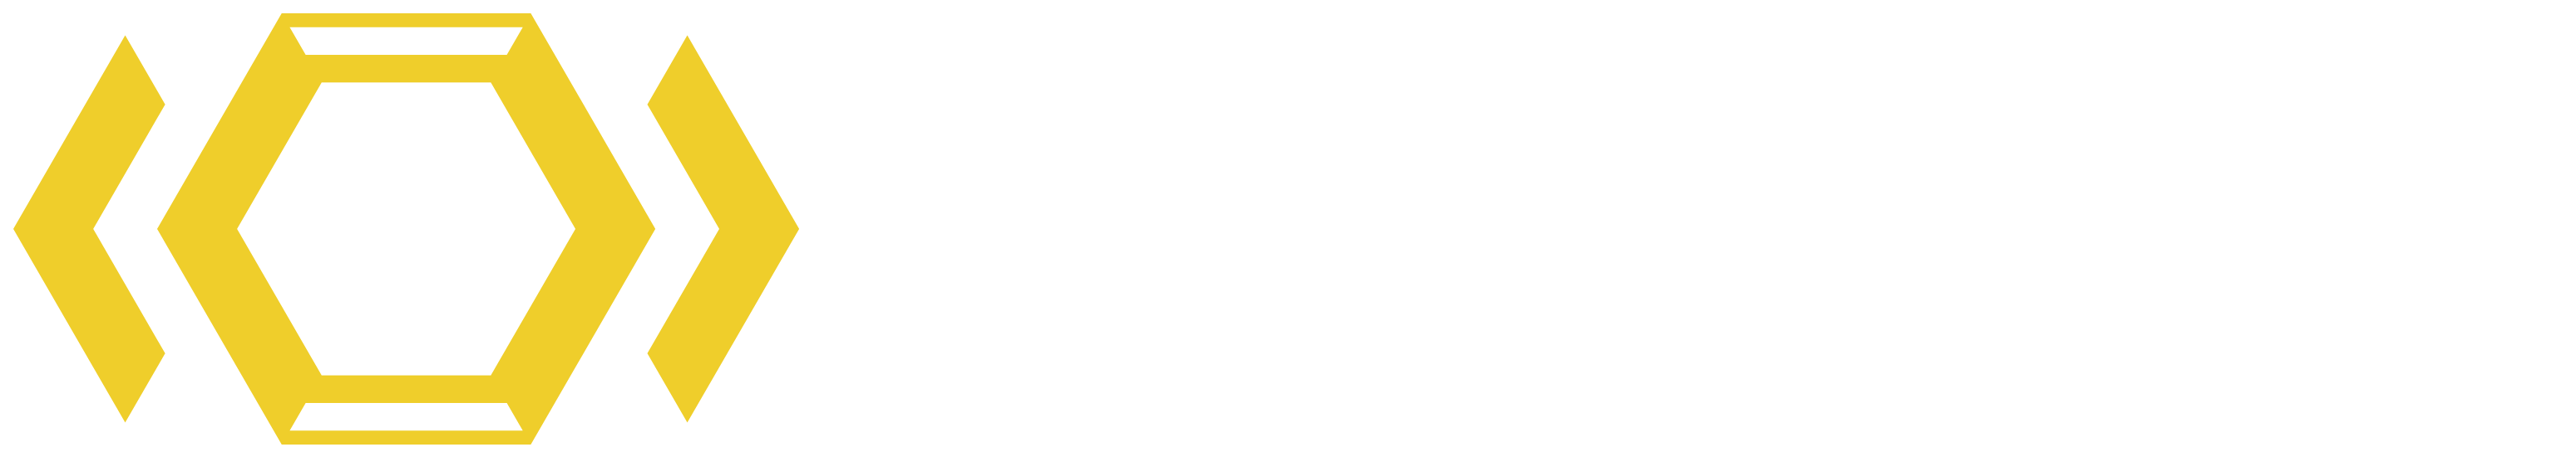 Symmetry Sound & Lights